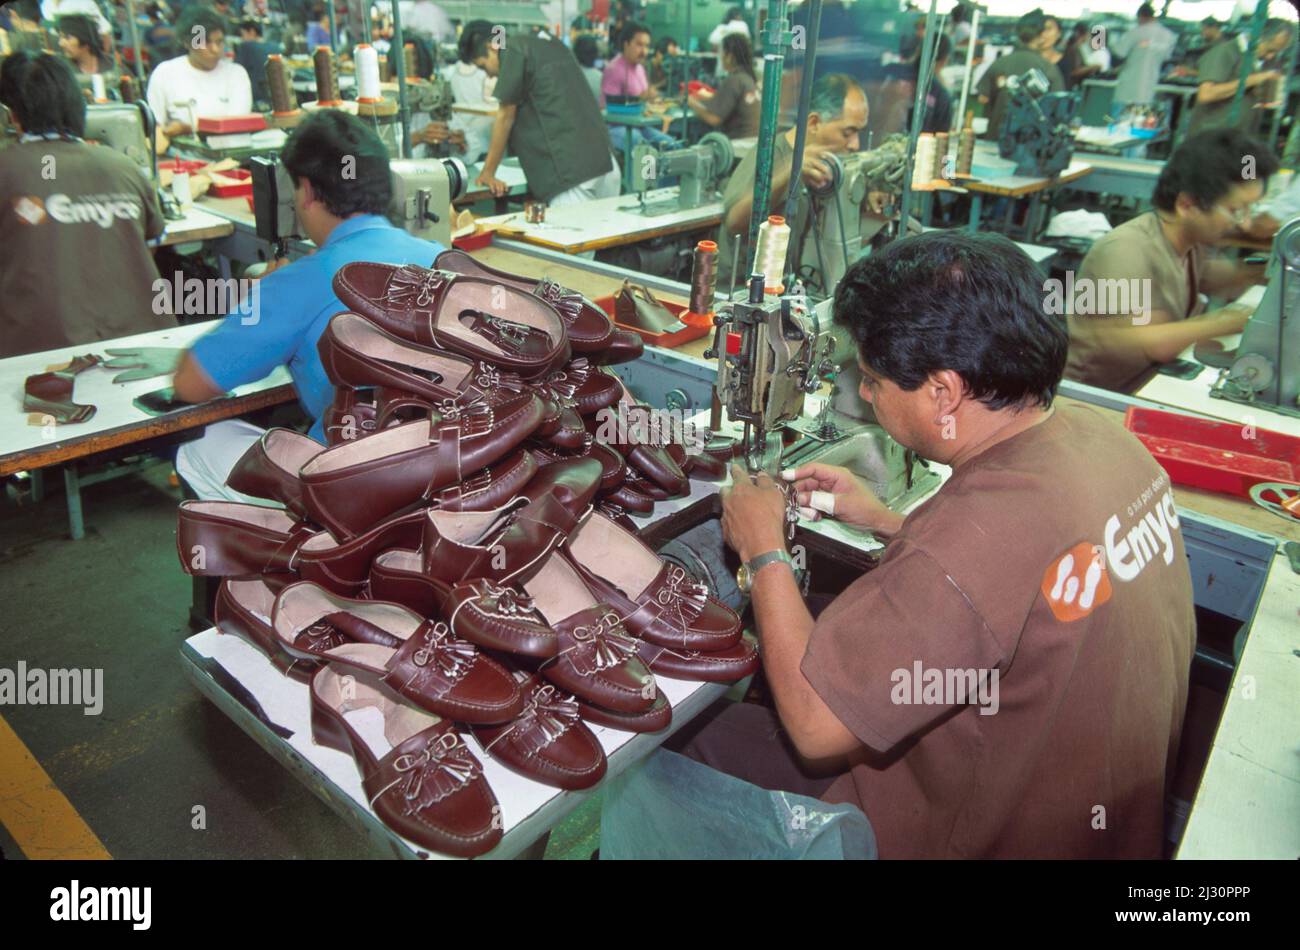 Leon Mexico,Mexican Hispanic,Emyco Shoe Factory,Empleados trabajadores trabajadores zapatos dentro de la fabricación de interiores Foto de stock